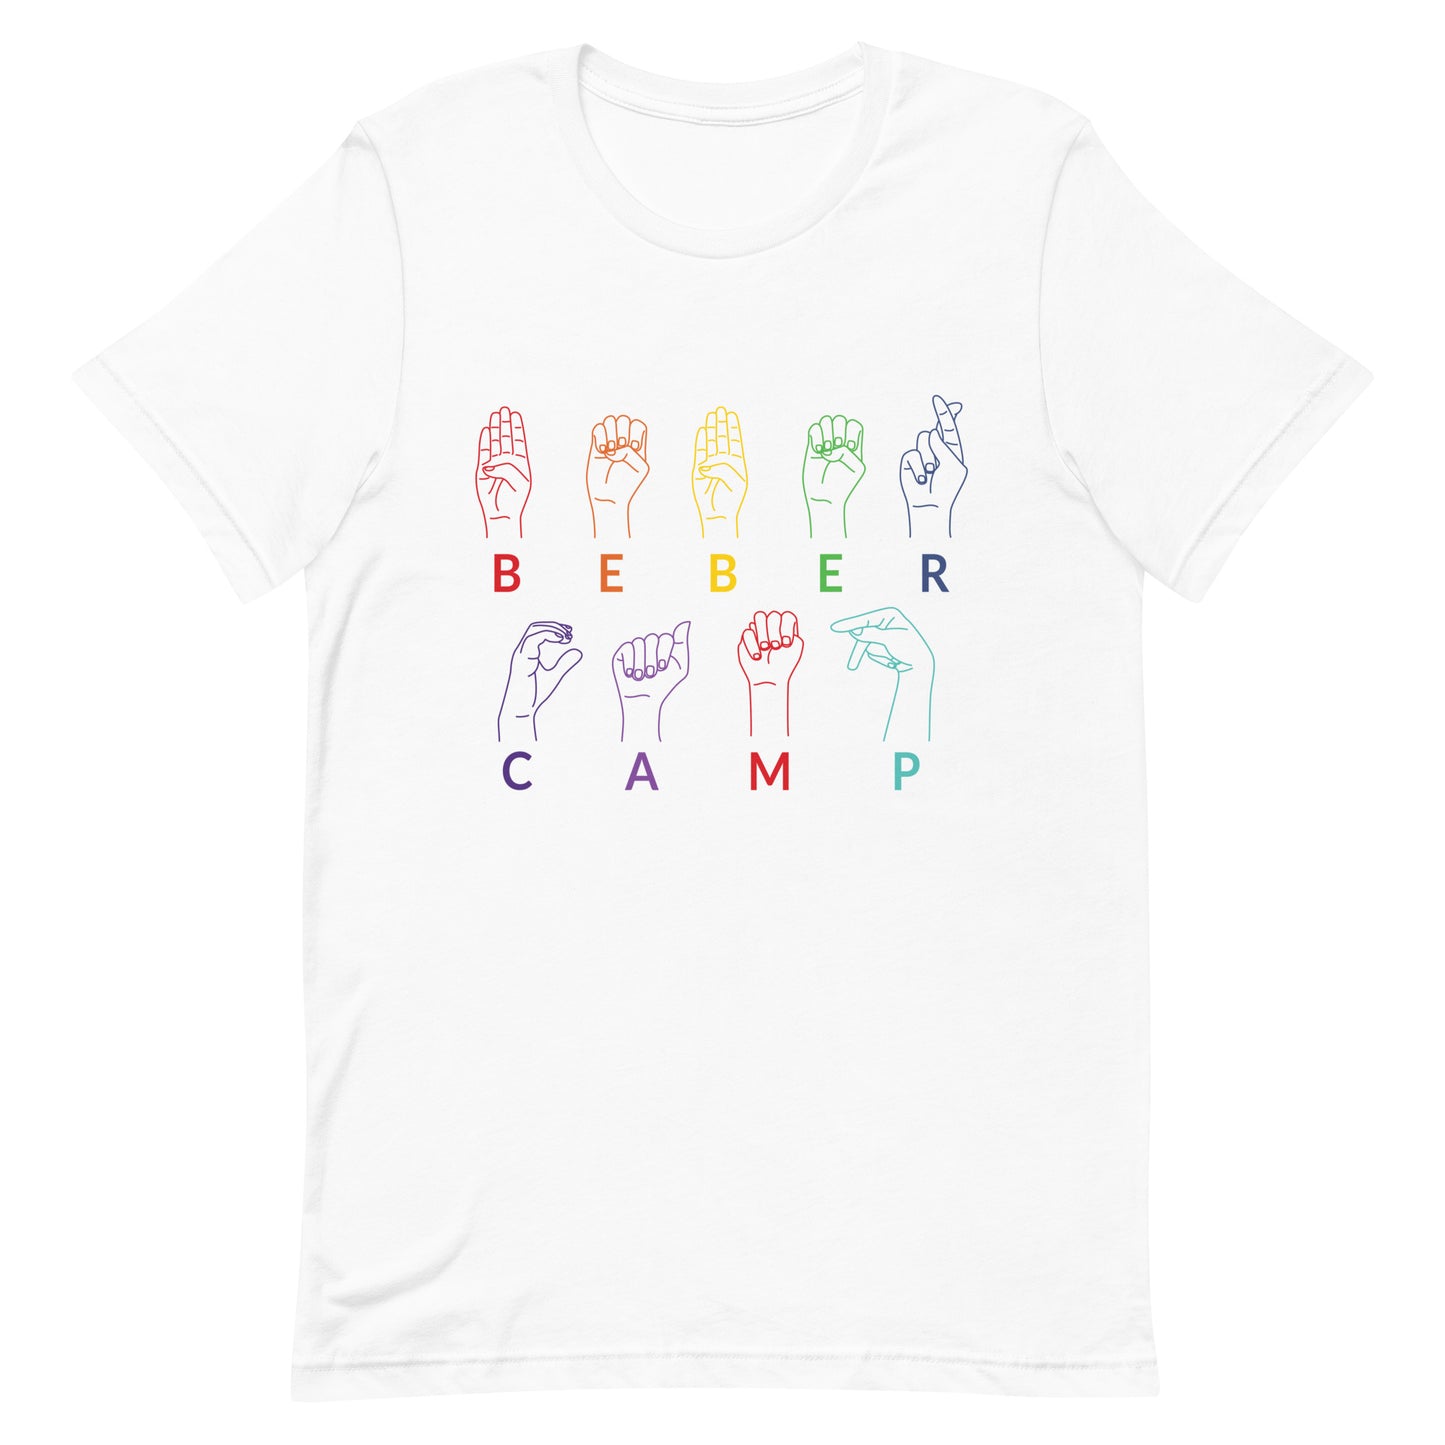 Beber Camp ASL Adult Unisex t-shirt